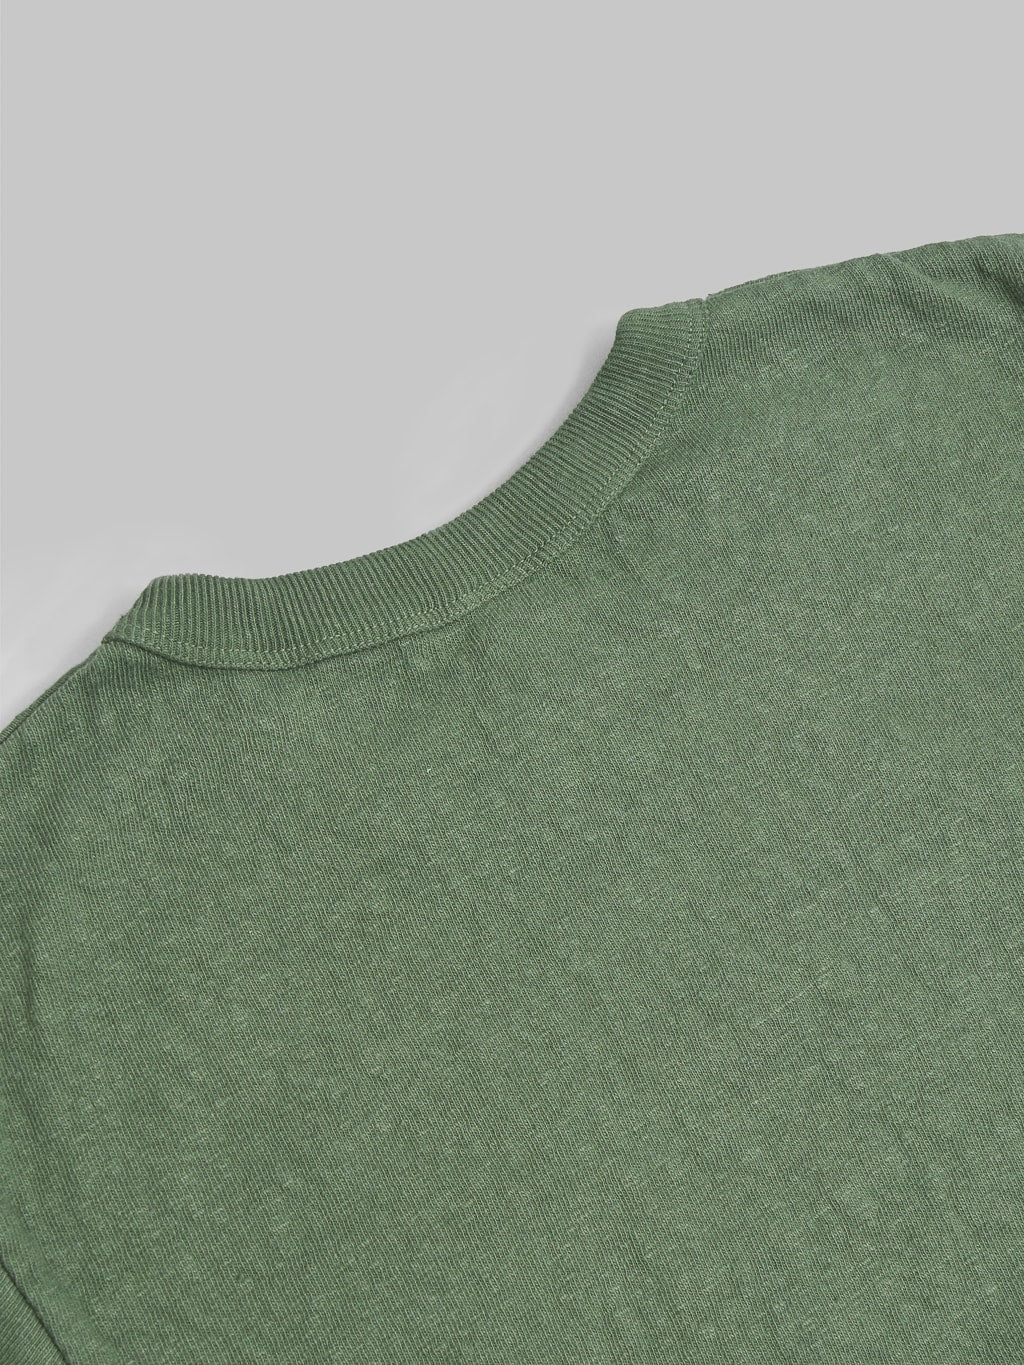 Ues slub nep short sleeve tshirt green cotton fabric texture